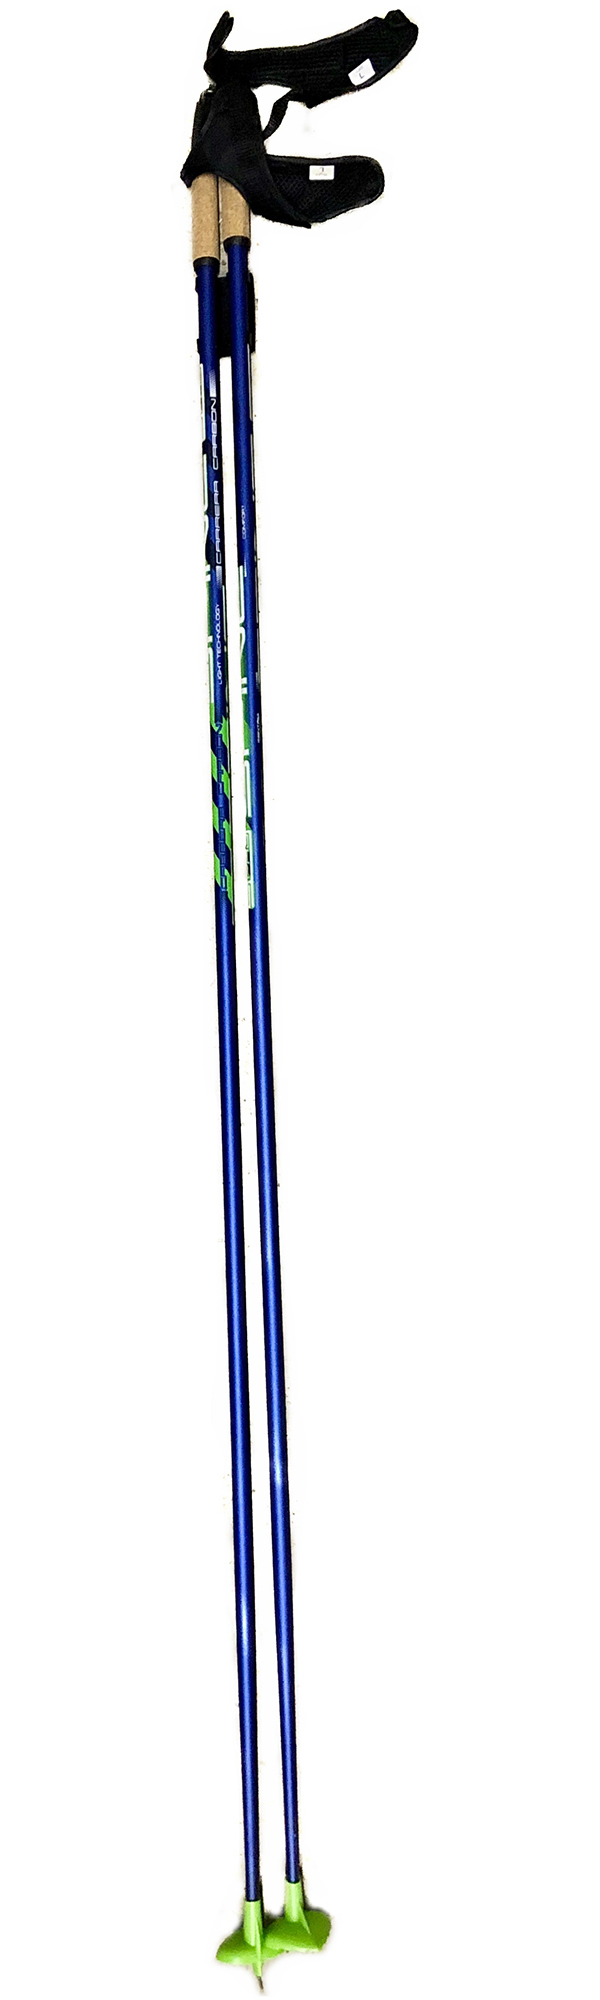 Палки лыжные SPINE Carrera Carbon  10016 1,50 м Сине-зеленый